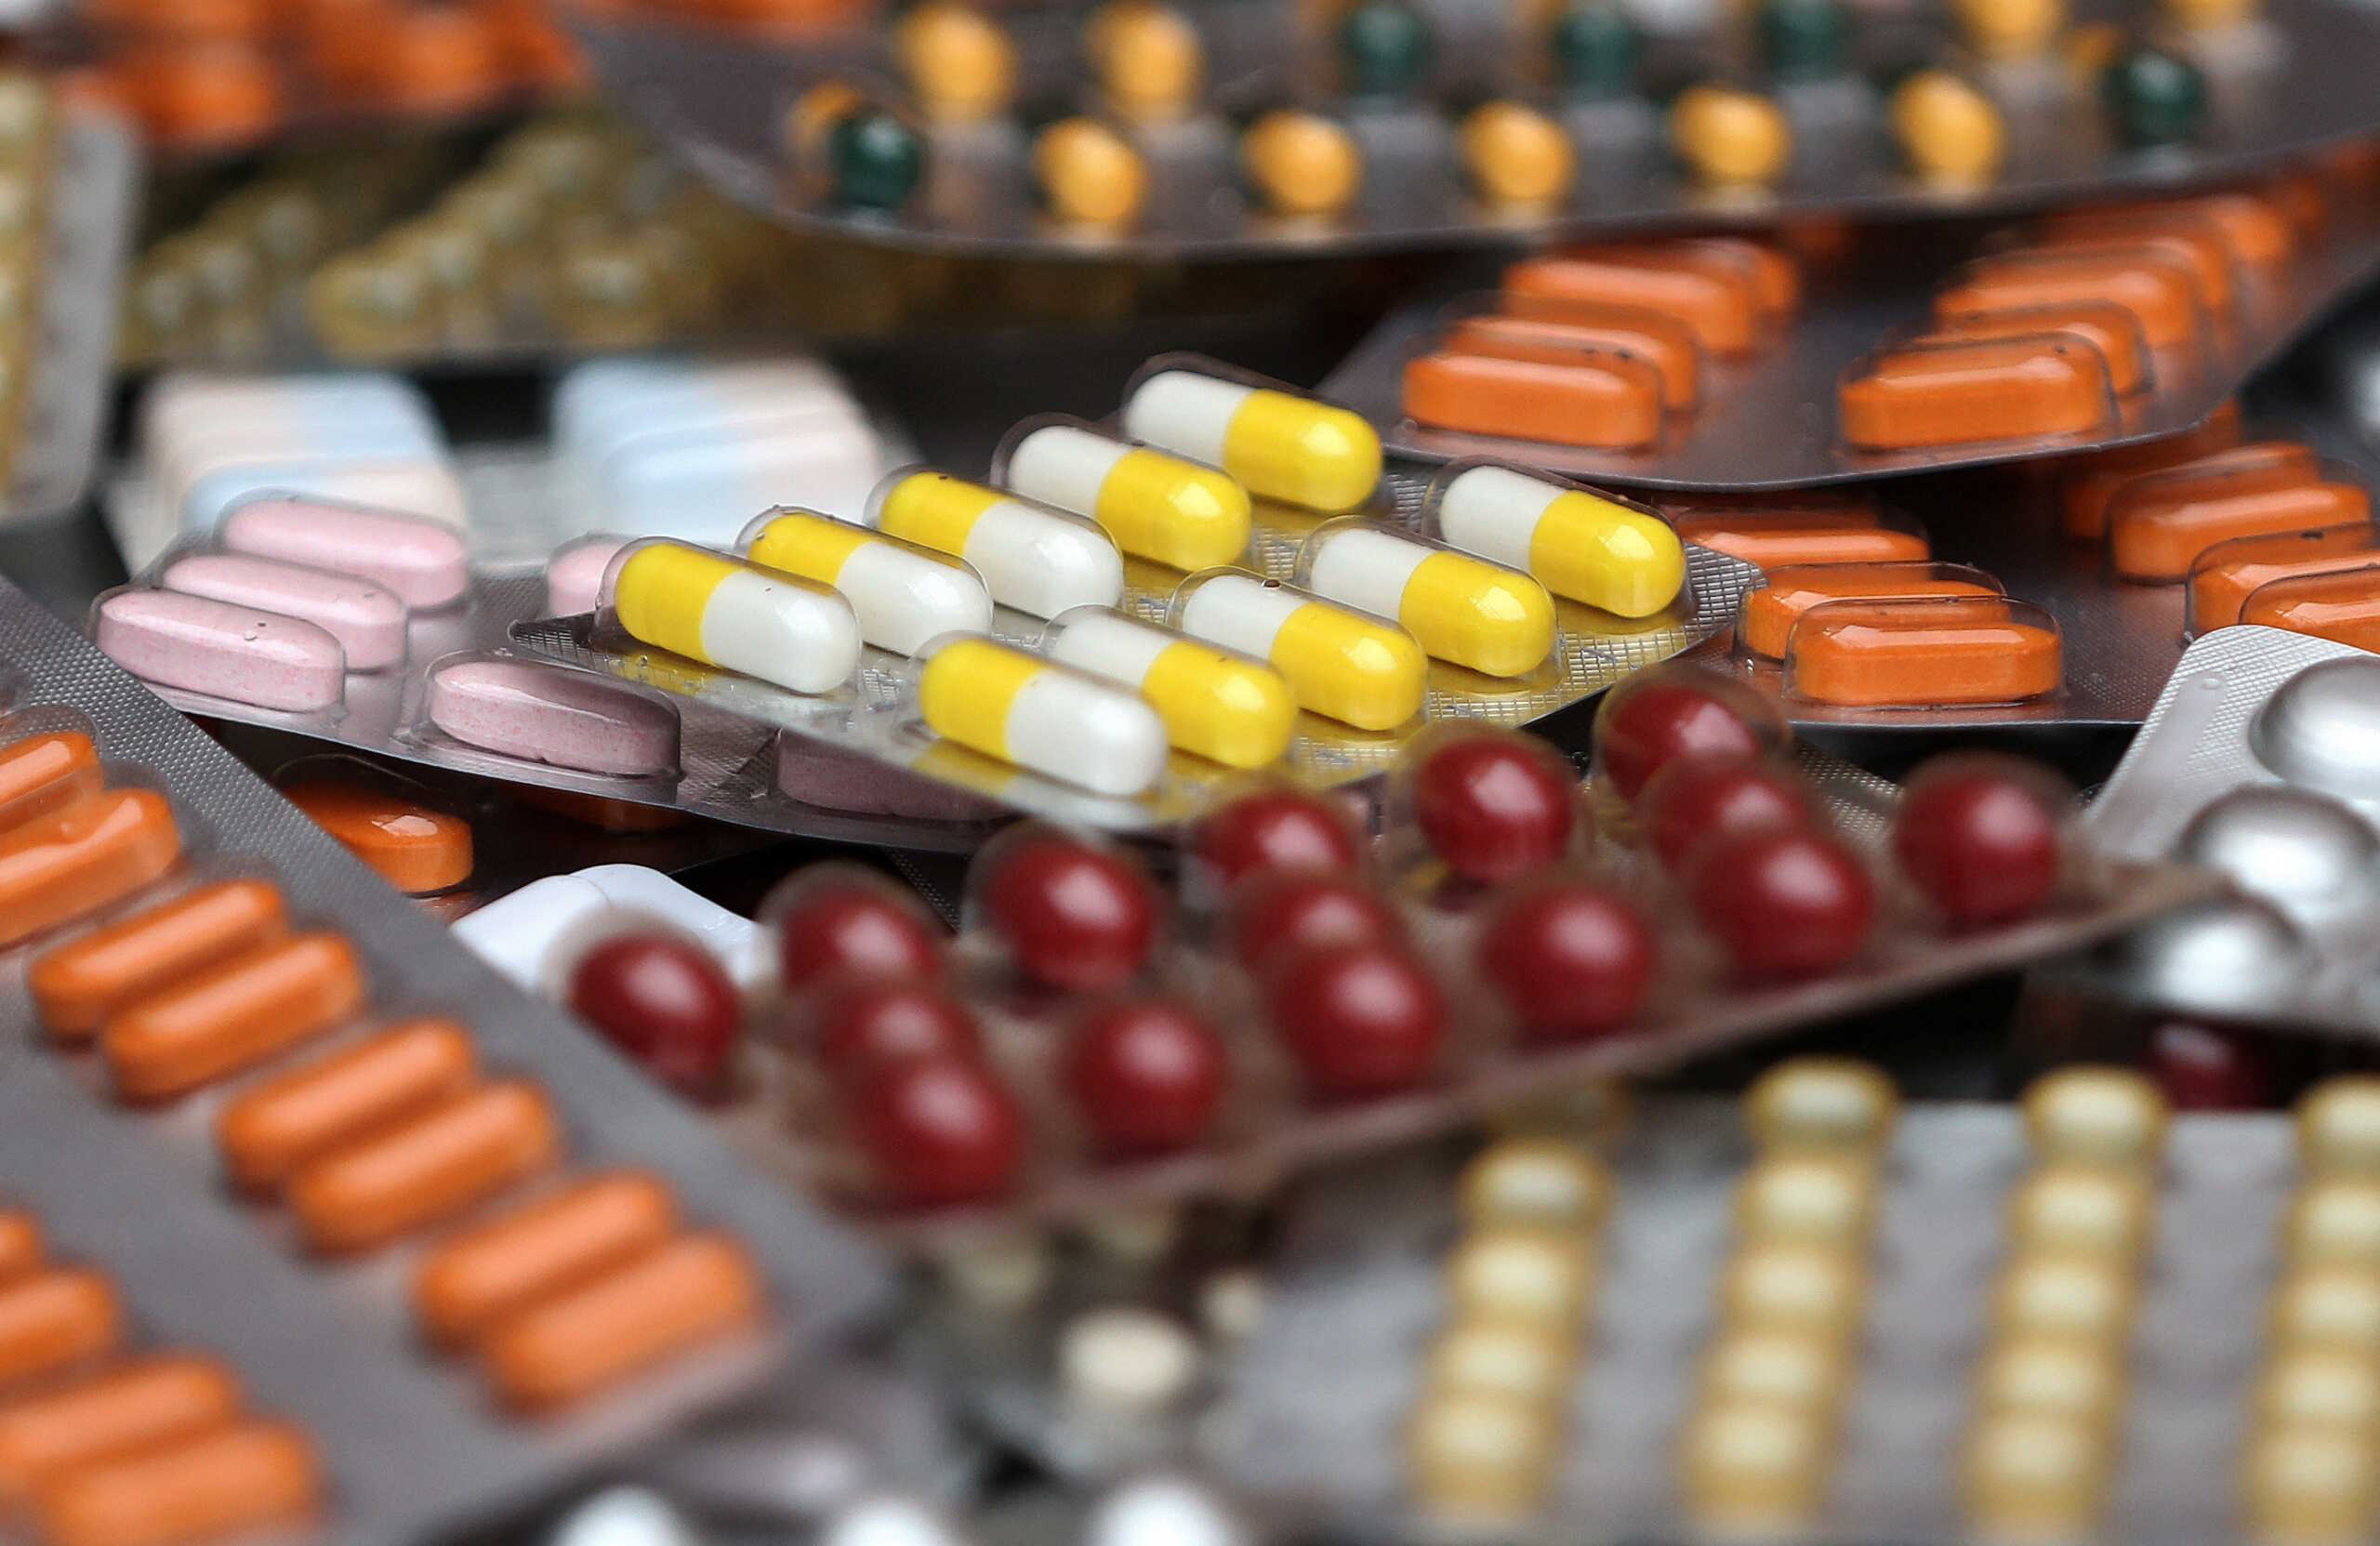 Αντιβιοτικά: «Η υπερκατανάλωση μπορεί να προκαλέσει 10 εκατομμύρια θανάτους τα επόμενα χρόνια» λέει ο ΠΟΥ